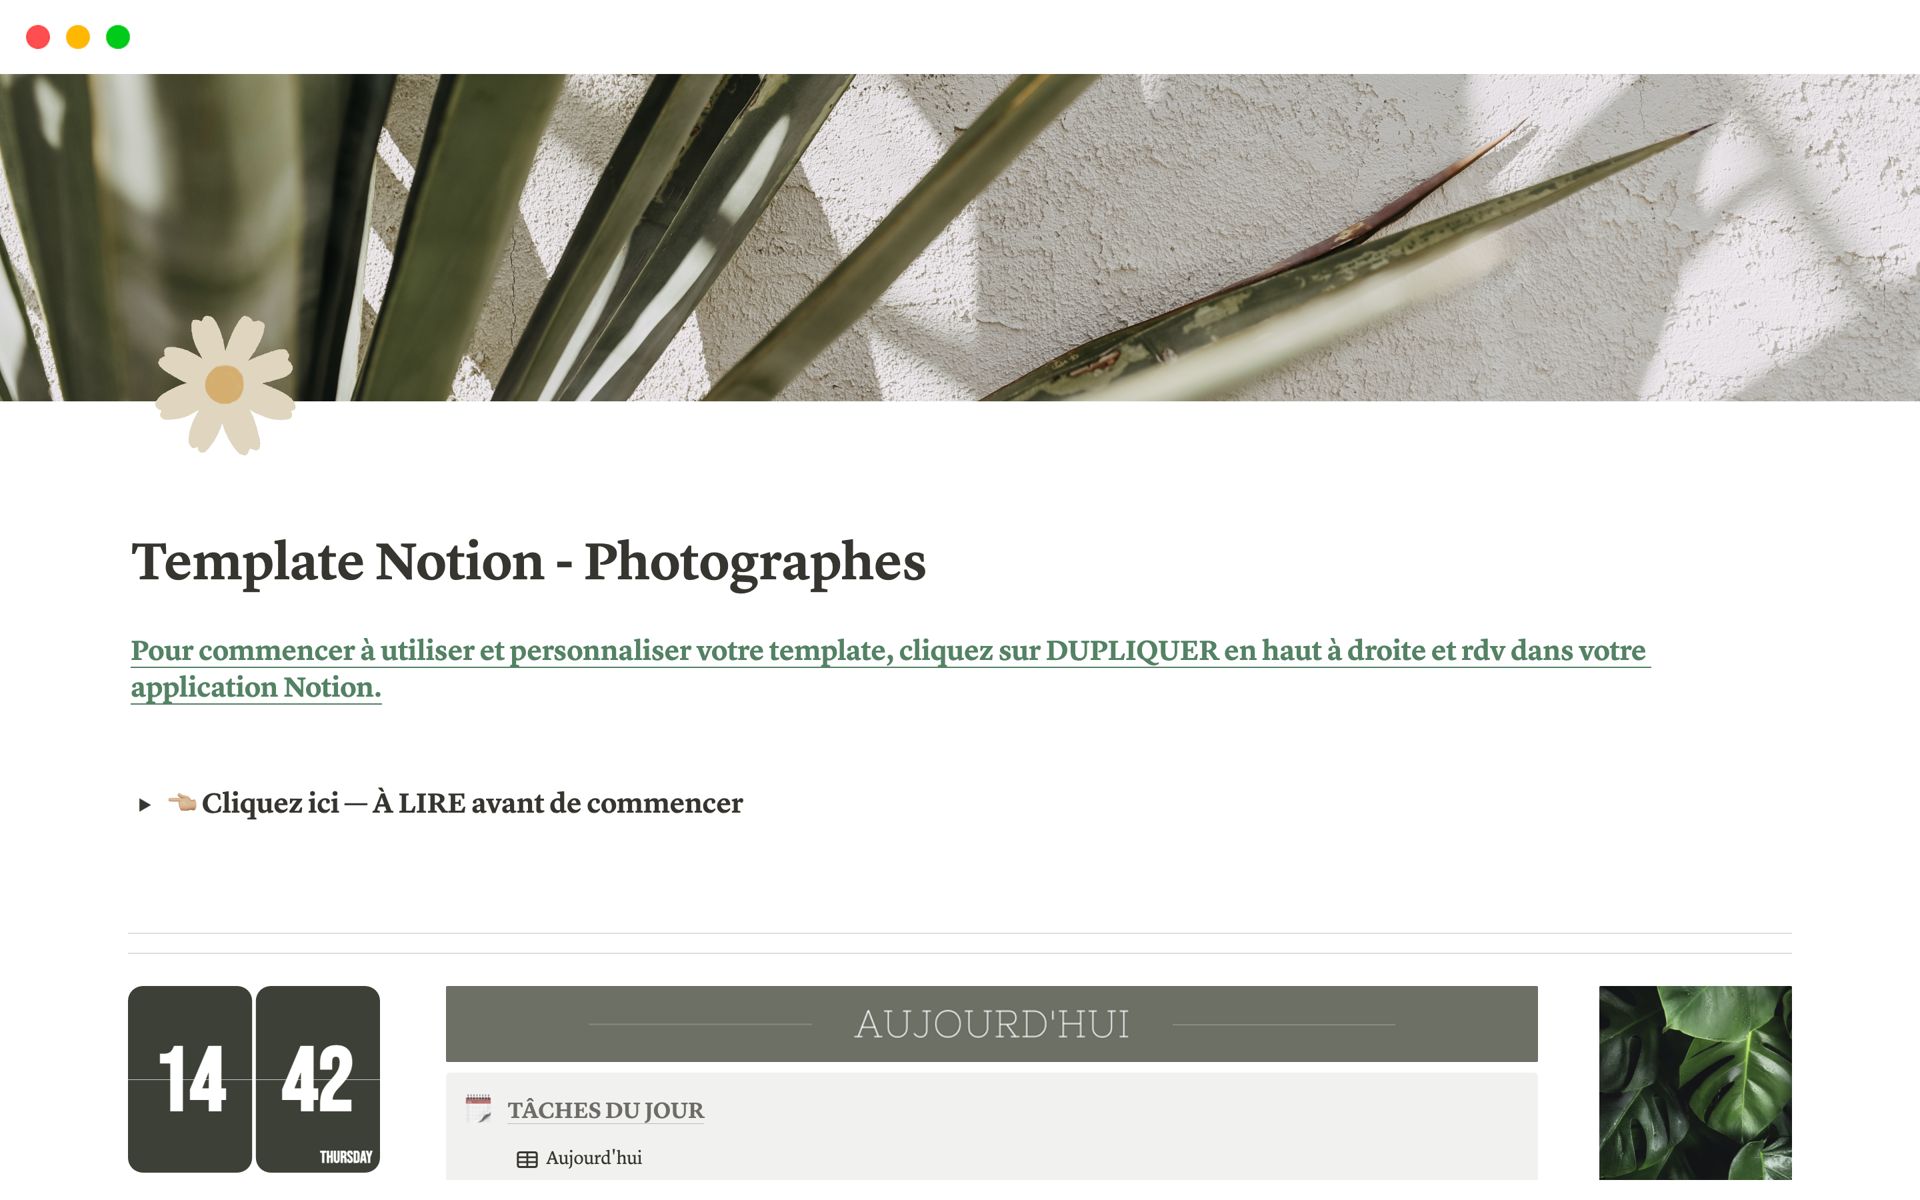 Template Notion créé pour les photographes qui veulent organiser leur entreprise, avec des to-do listes, fichiers clients et aides à la création de contenu.